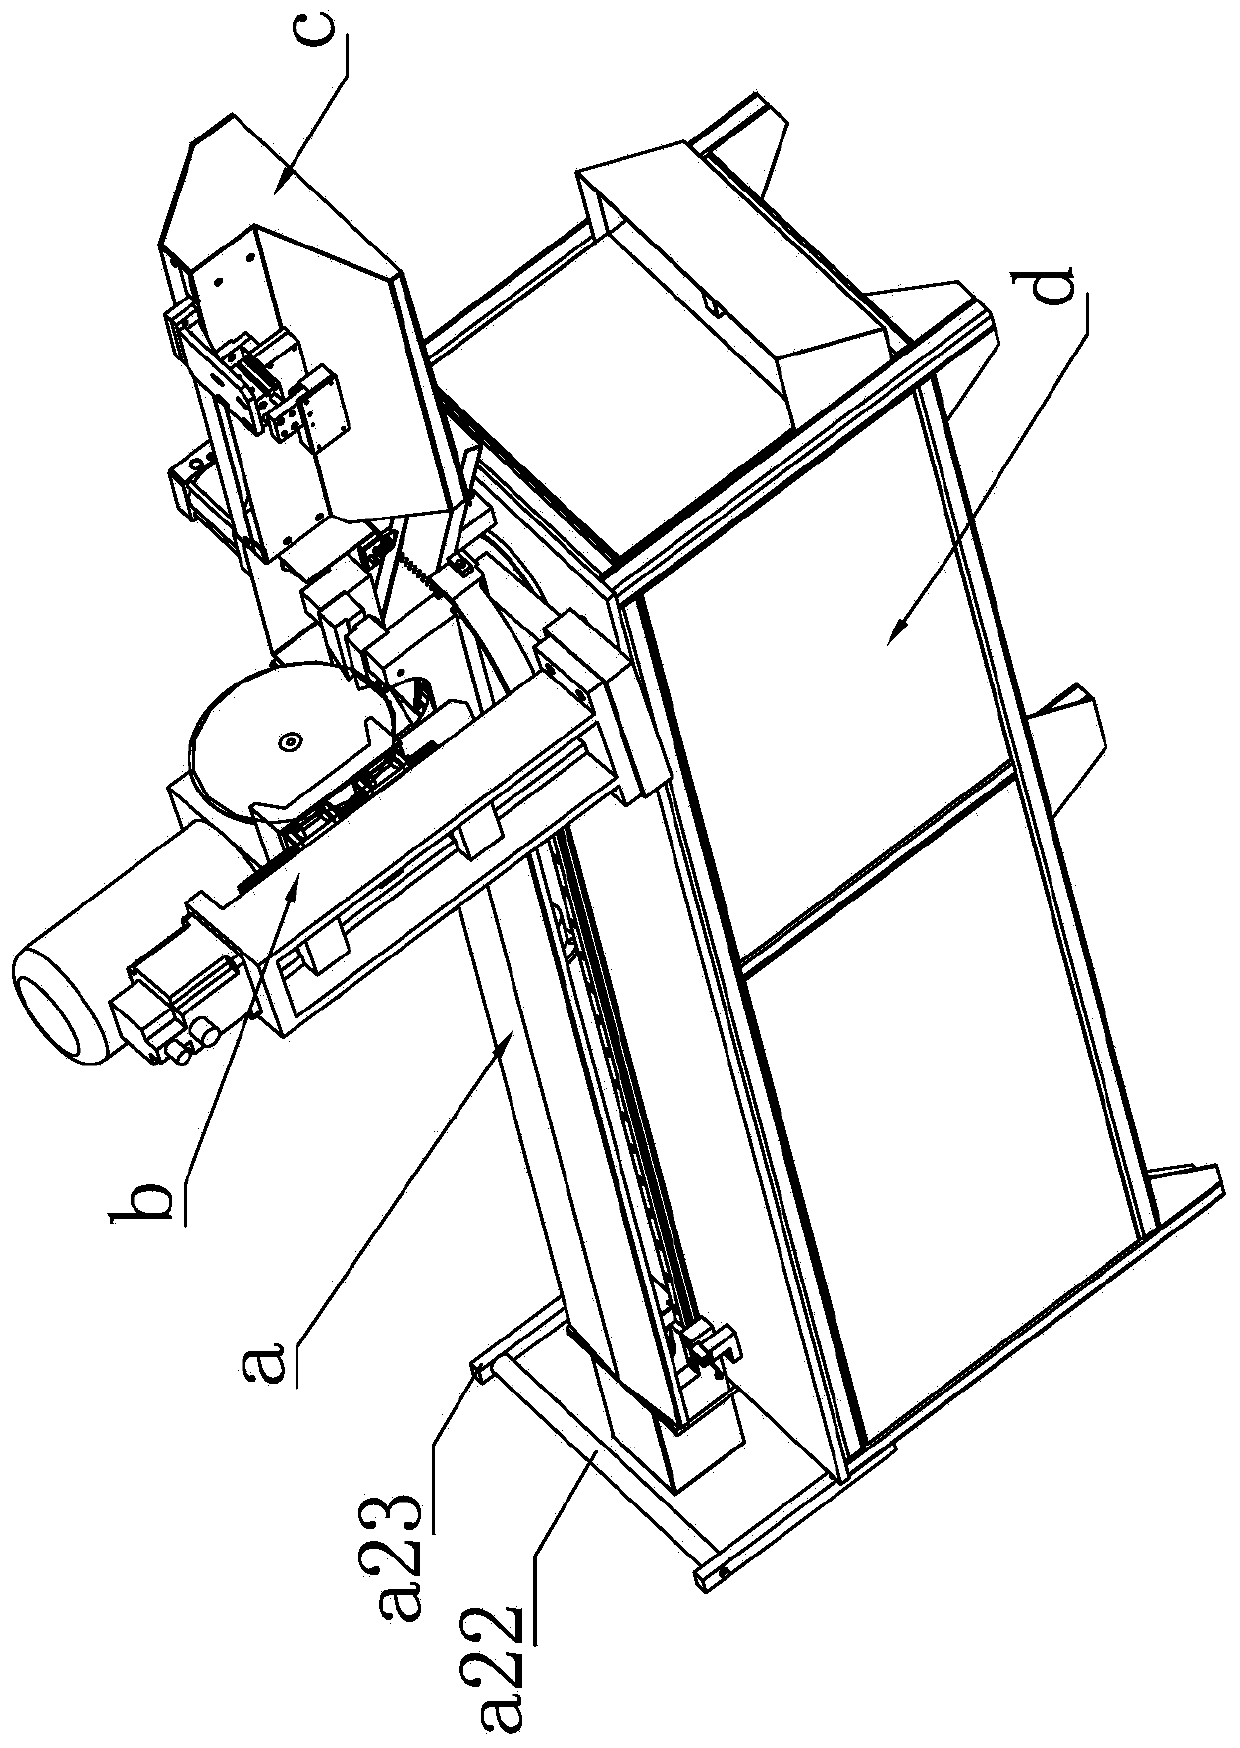 Pipe cutting machine with rotary machine head